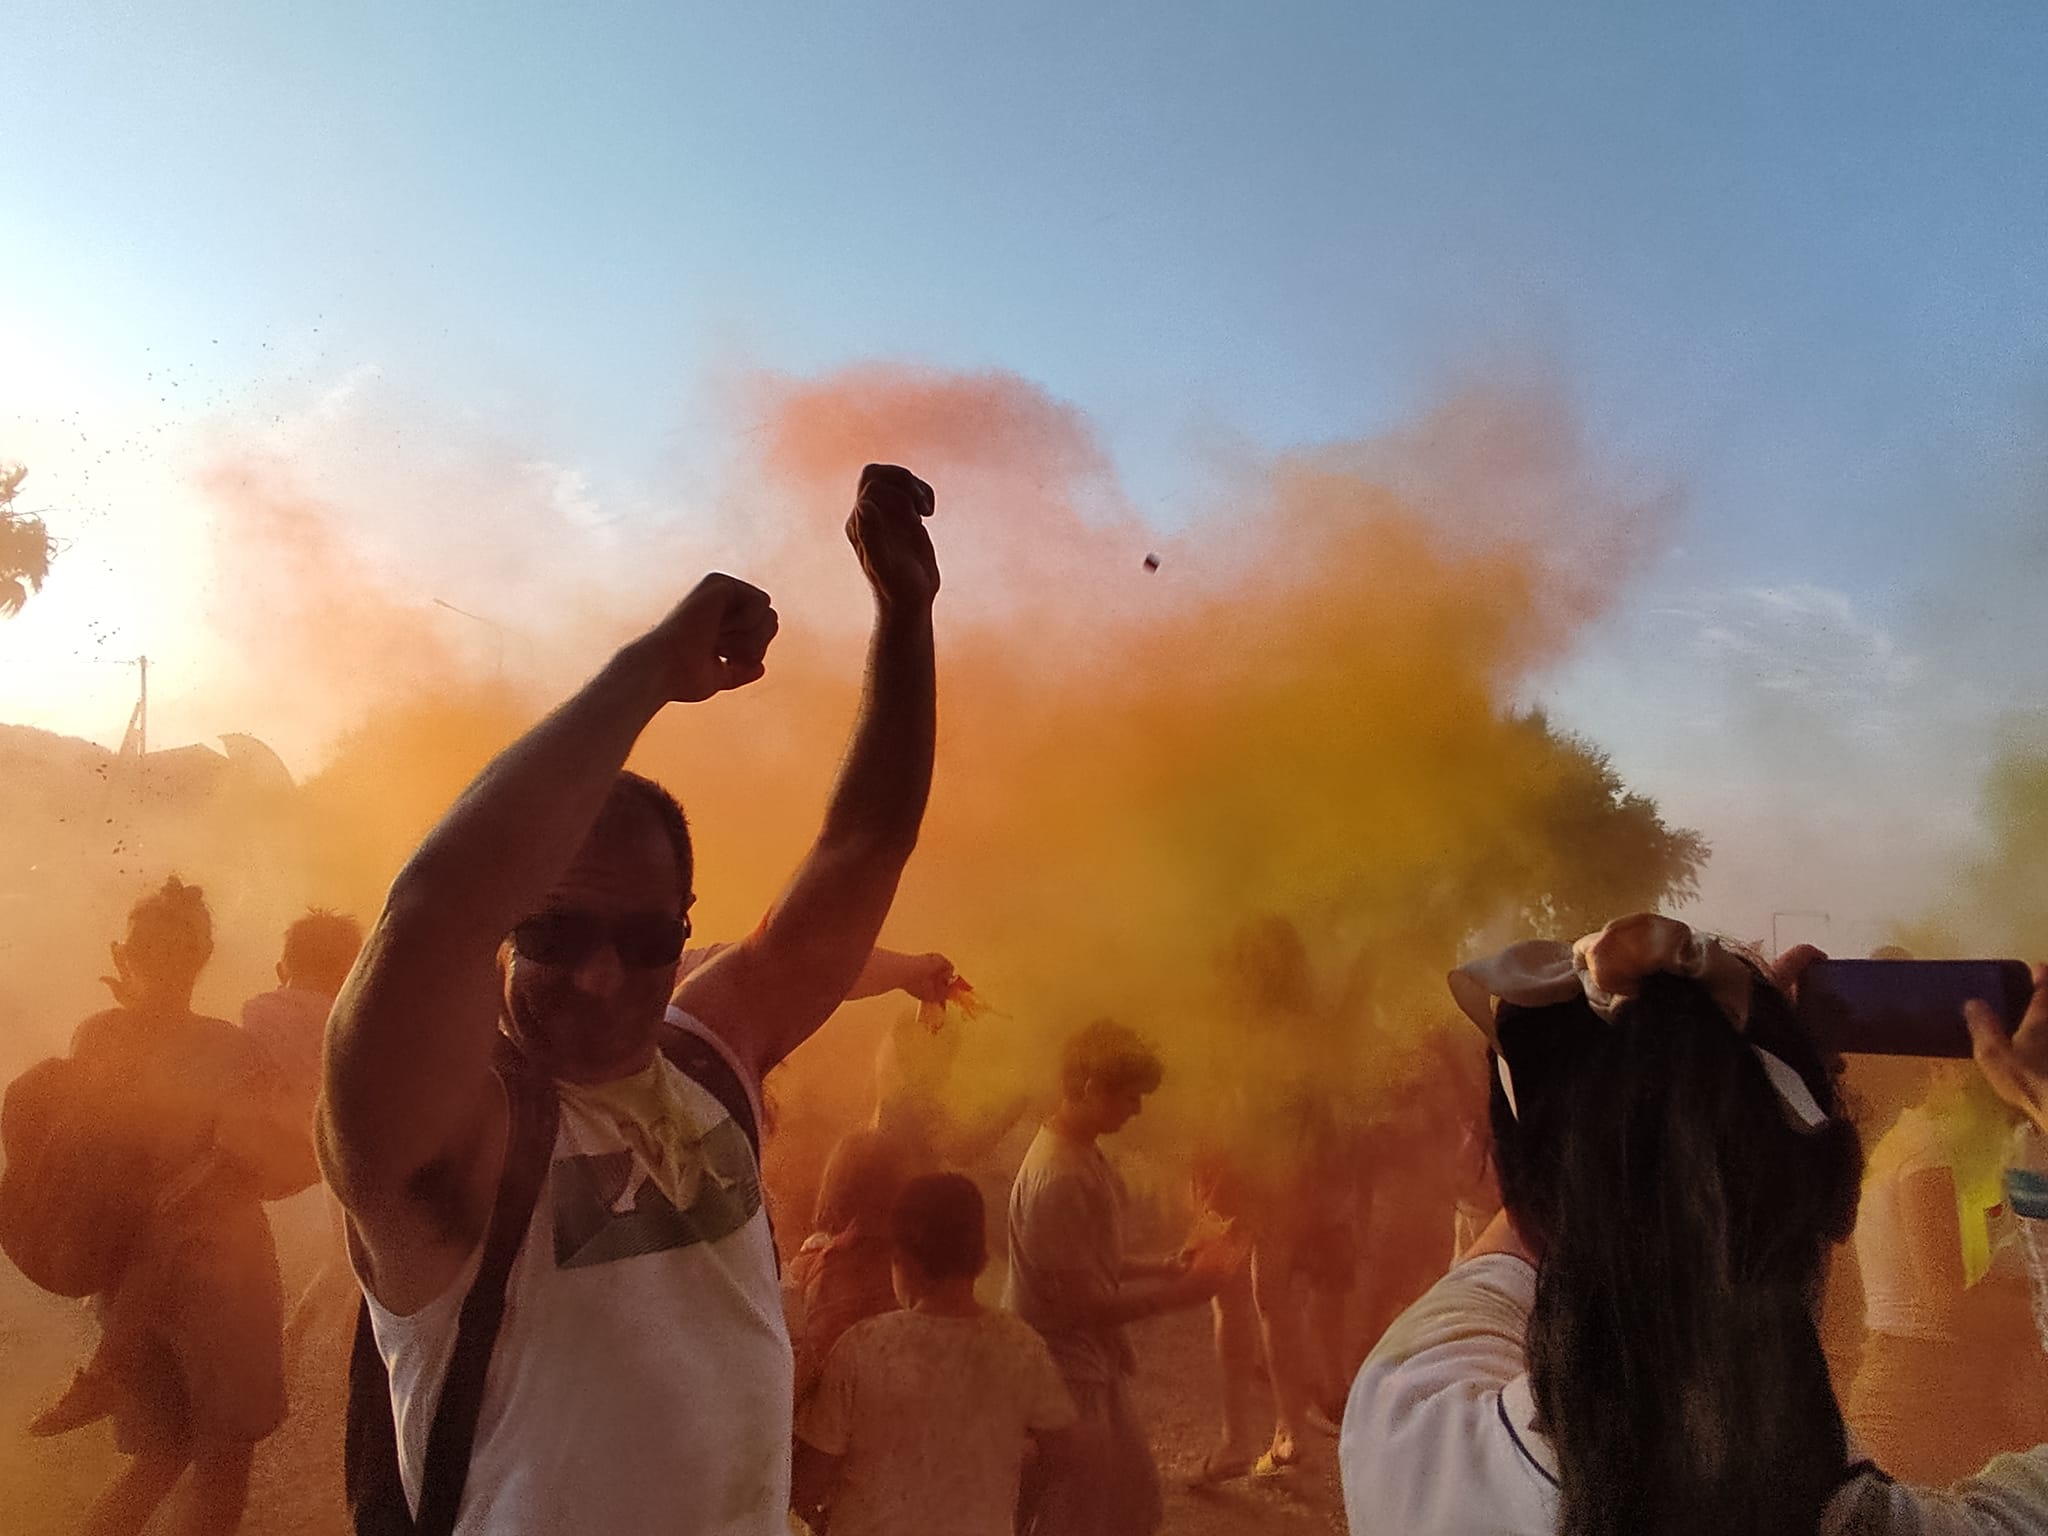 Σκόρπισε χαρά το φεστιβάλ χρωμάτων στη Μυτιλήνη (video)